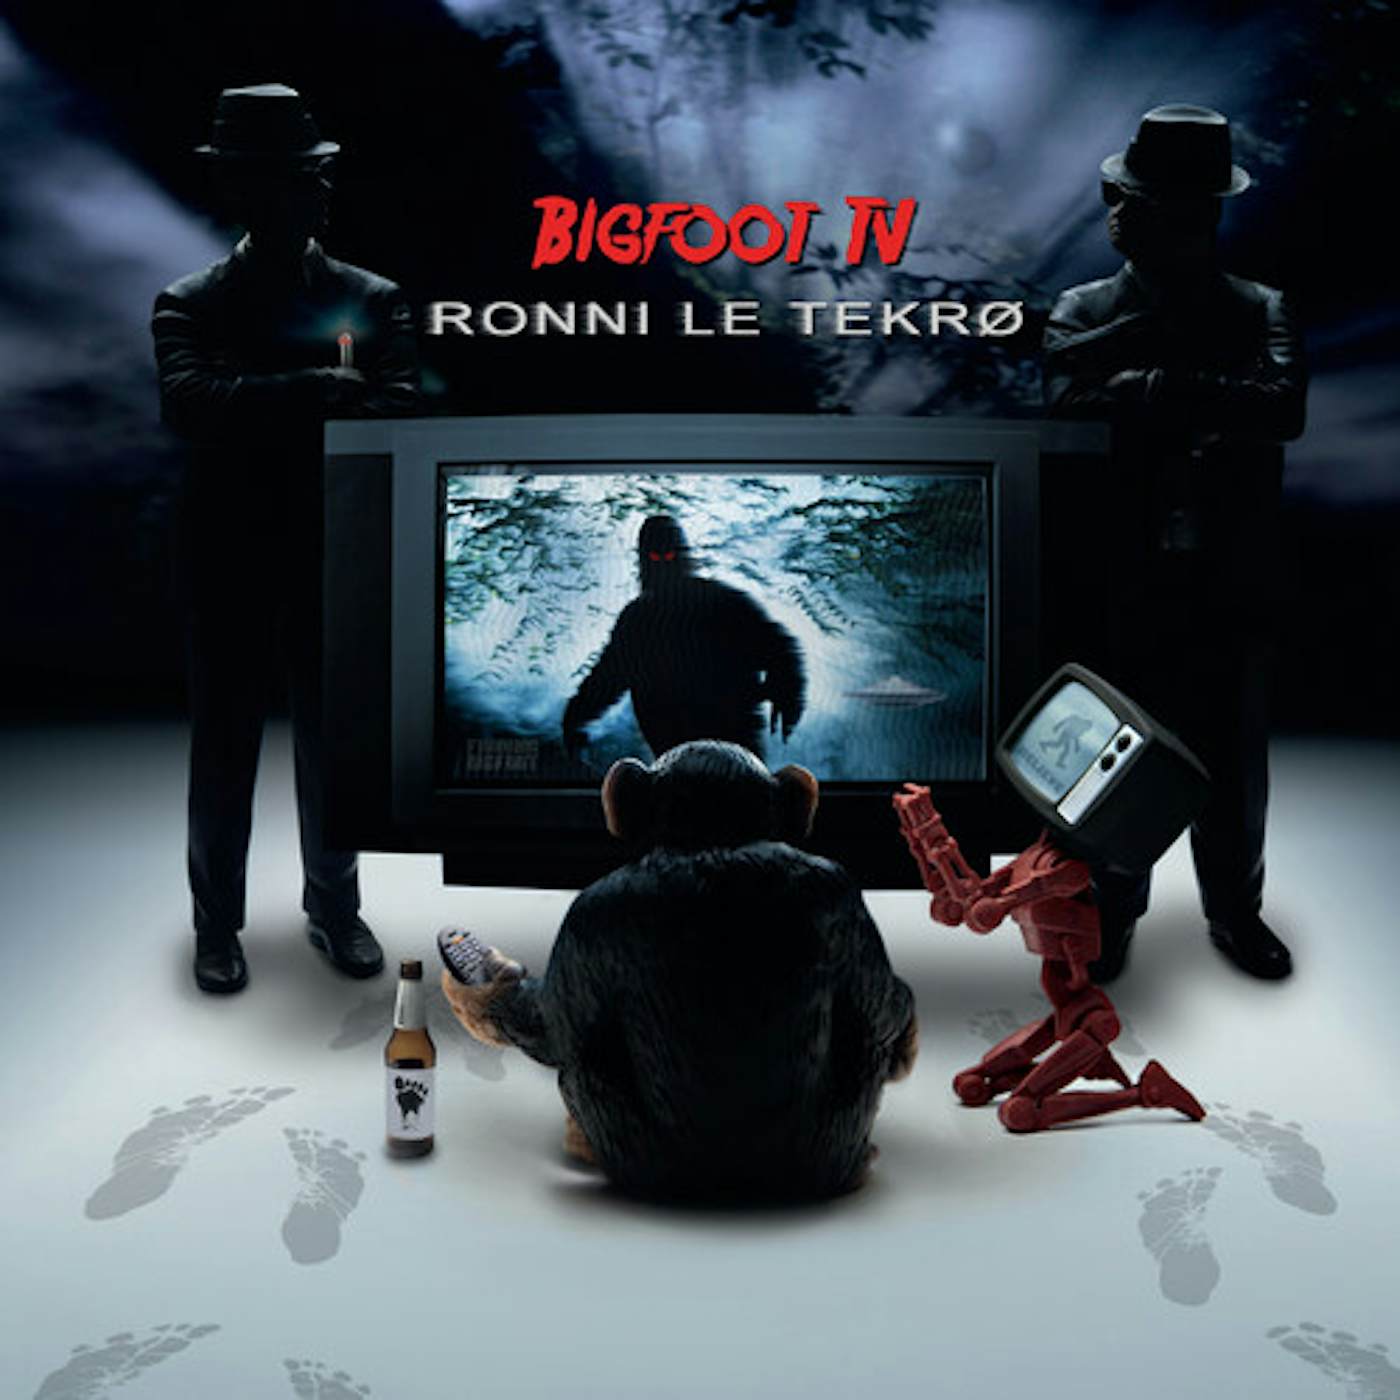 Ronni Le Tekro Bigfoot TV Vinyl Record